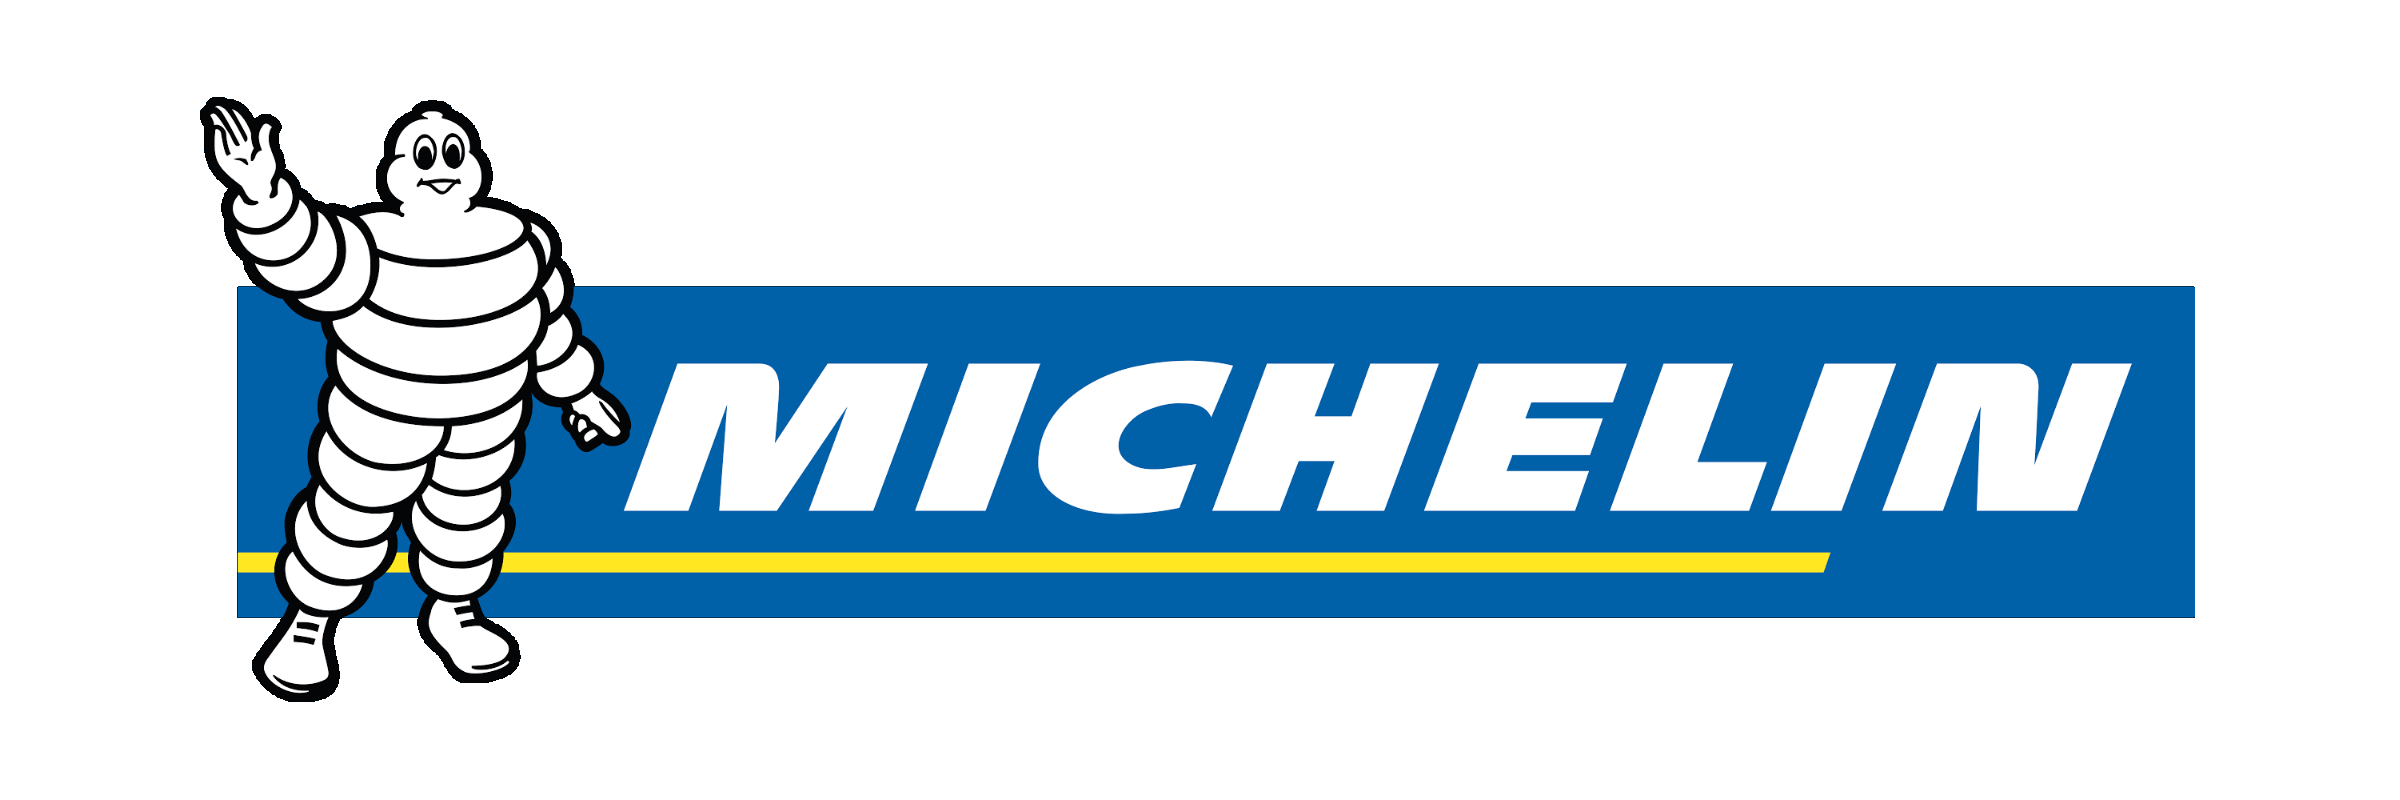 Michelin Brand Logo Transpare